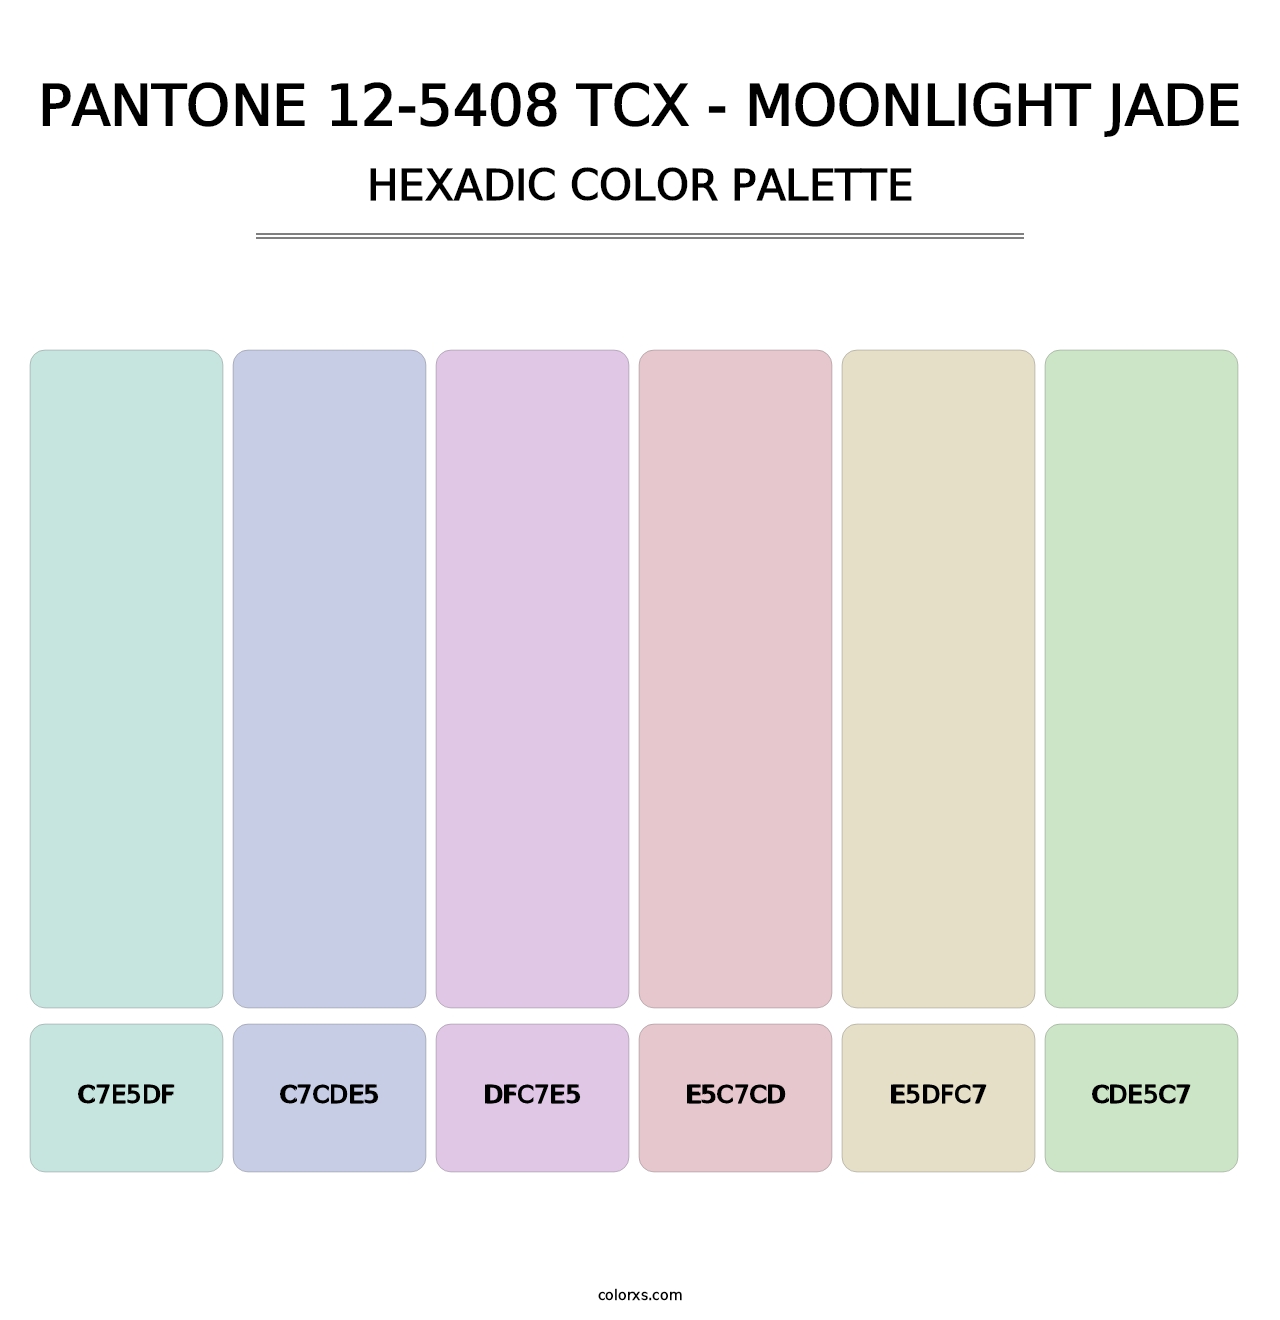 PANTONE 12-5408 TCX - Moonlight Jade - Hexadic Color Palette